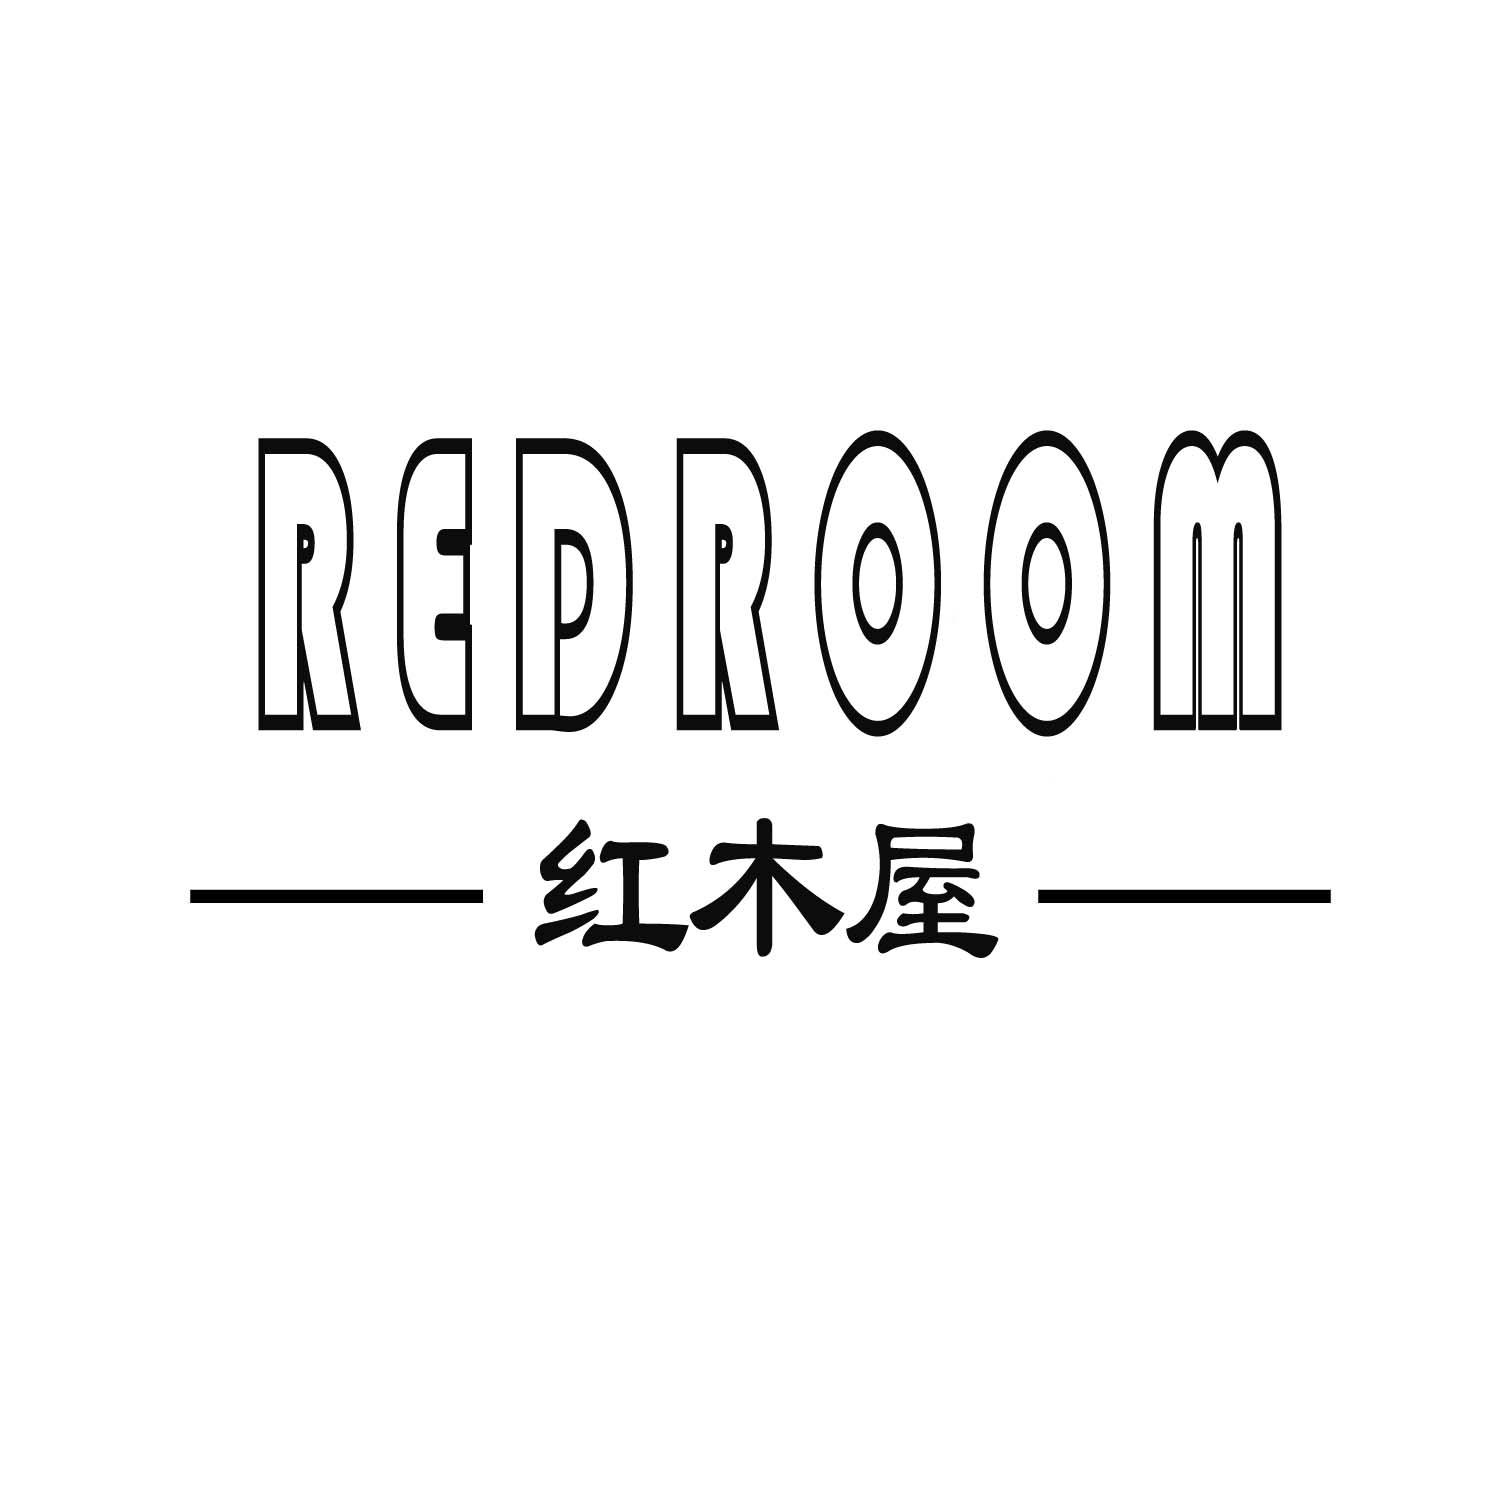 红木屋 REDROOM